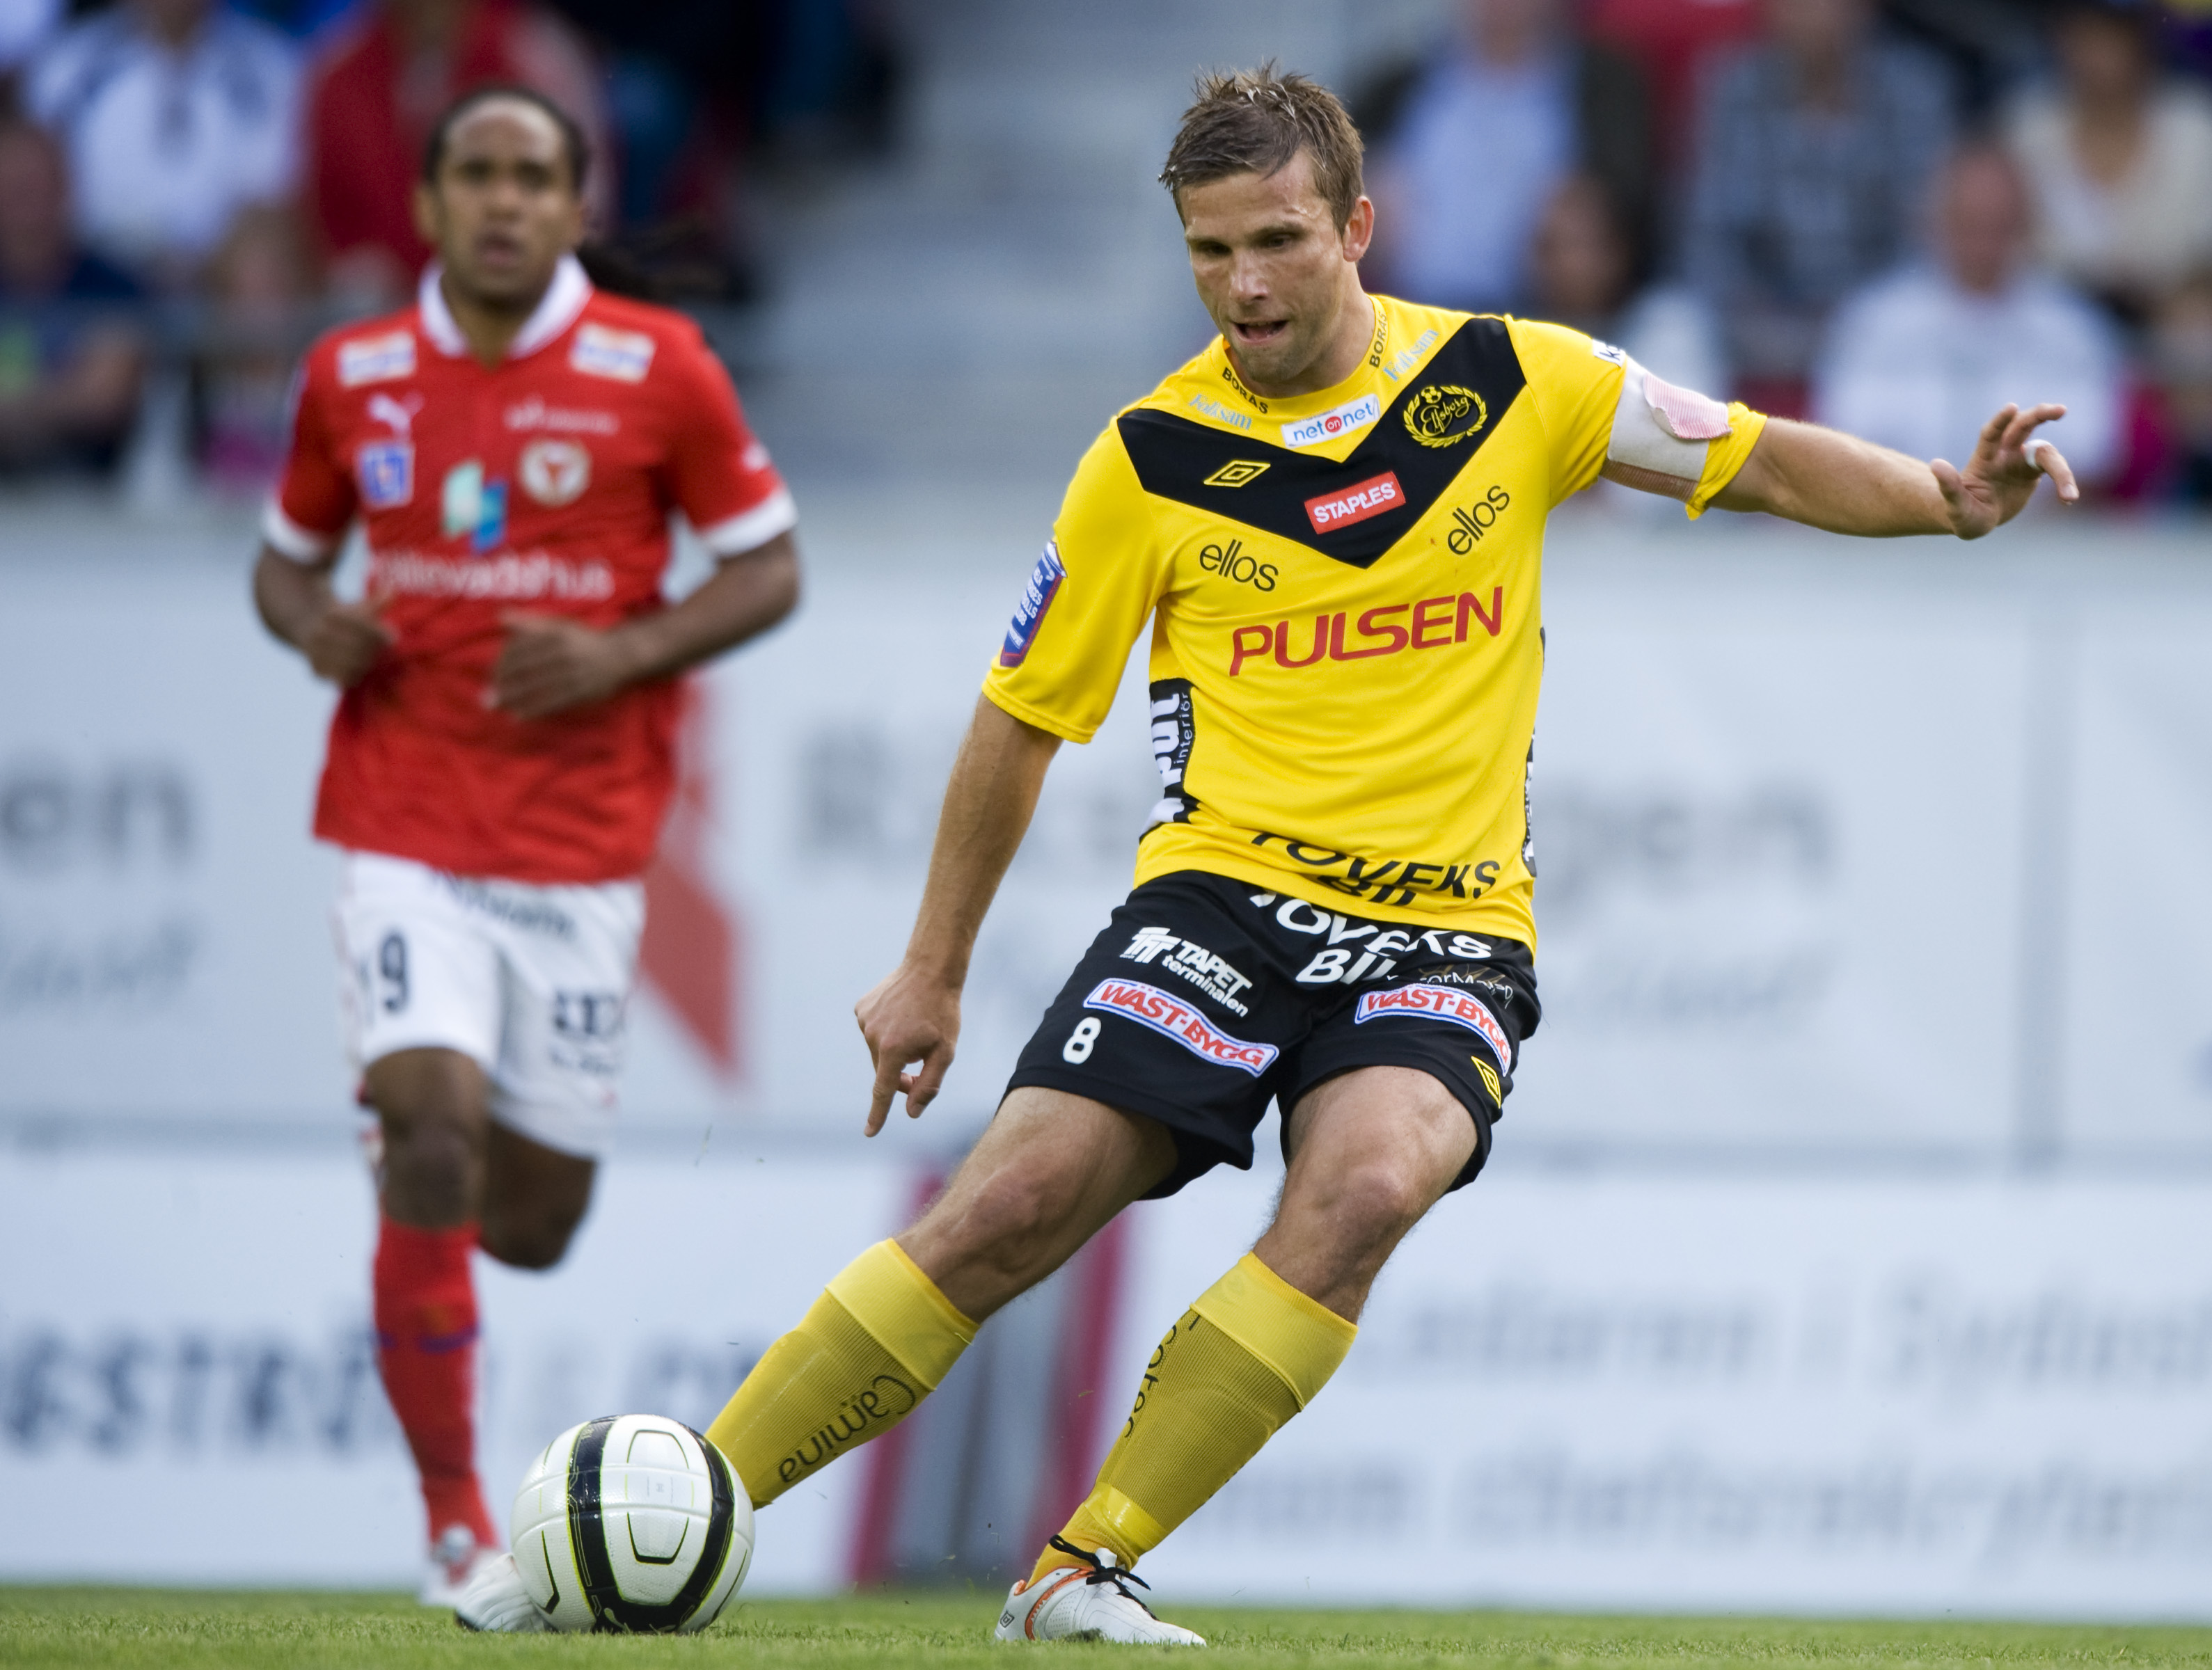 Fotboll, Anders Svensson, IF Elfsborg, Allsvenskan, Kalmar FF, Serieledare